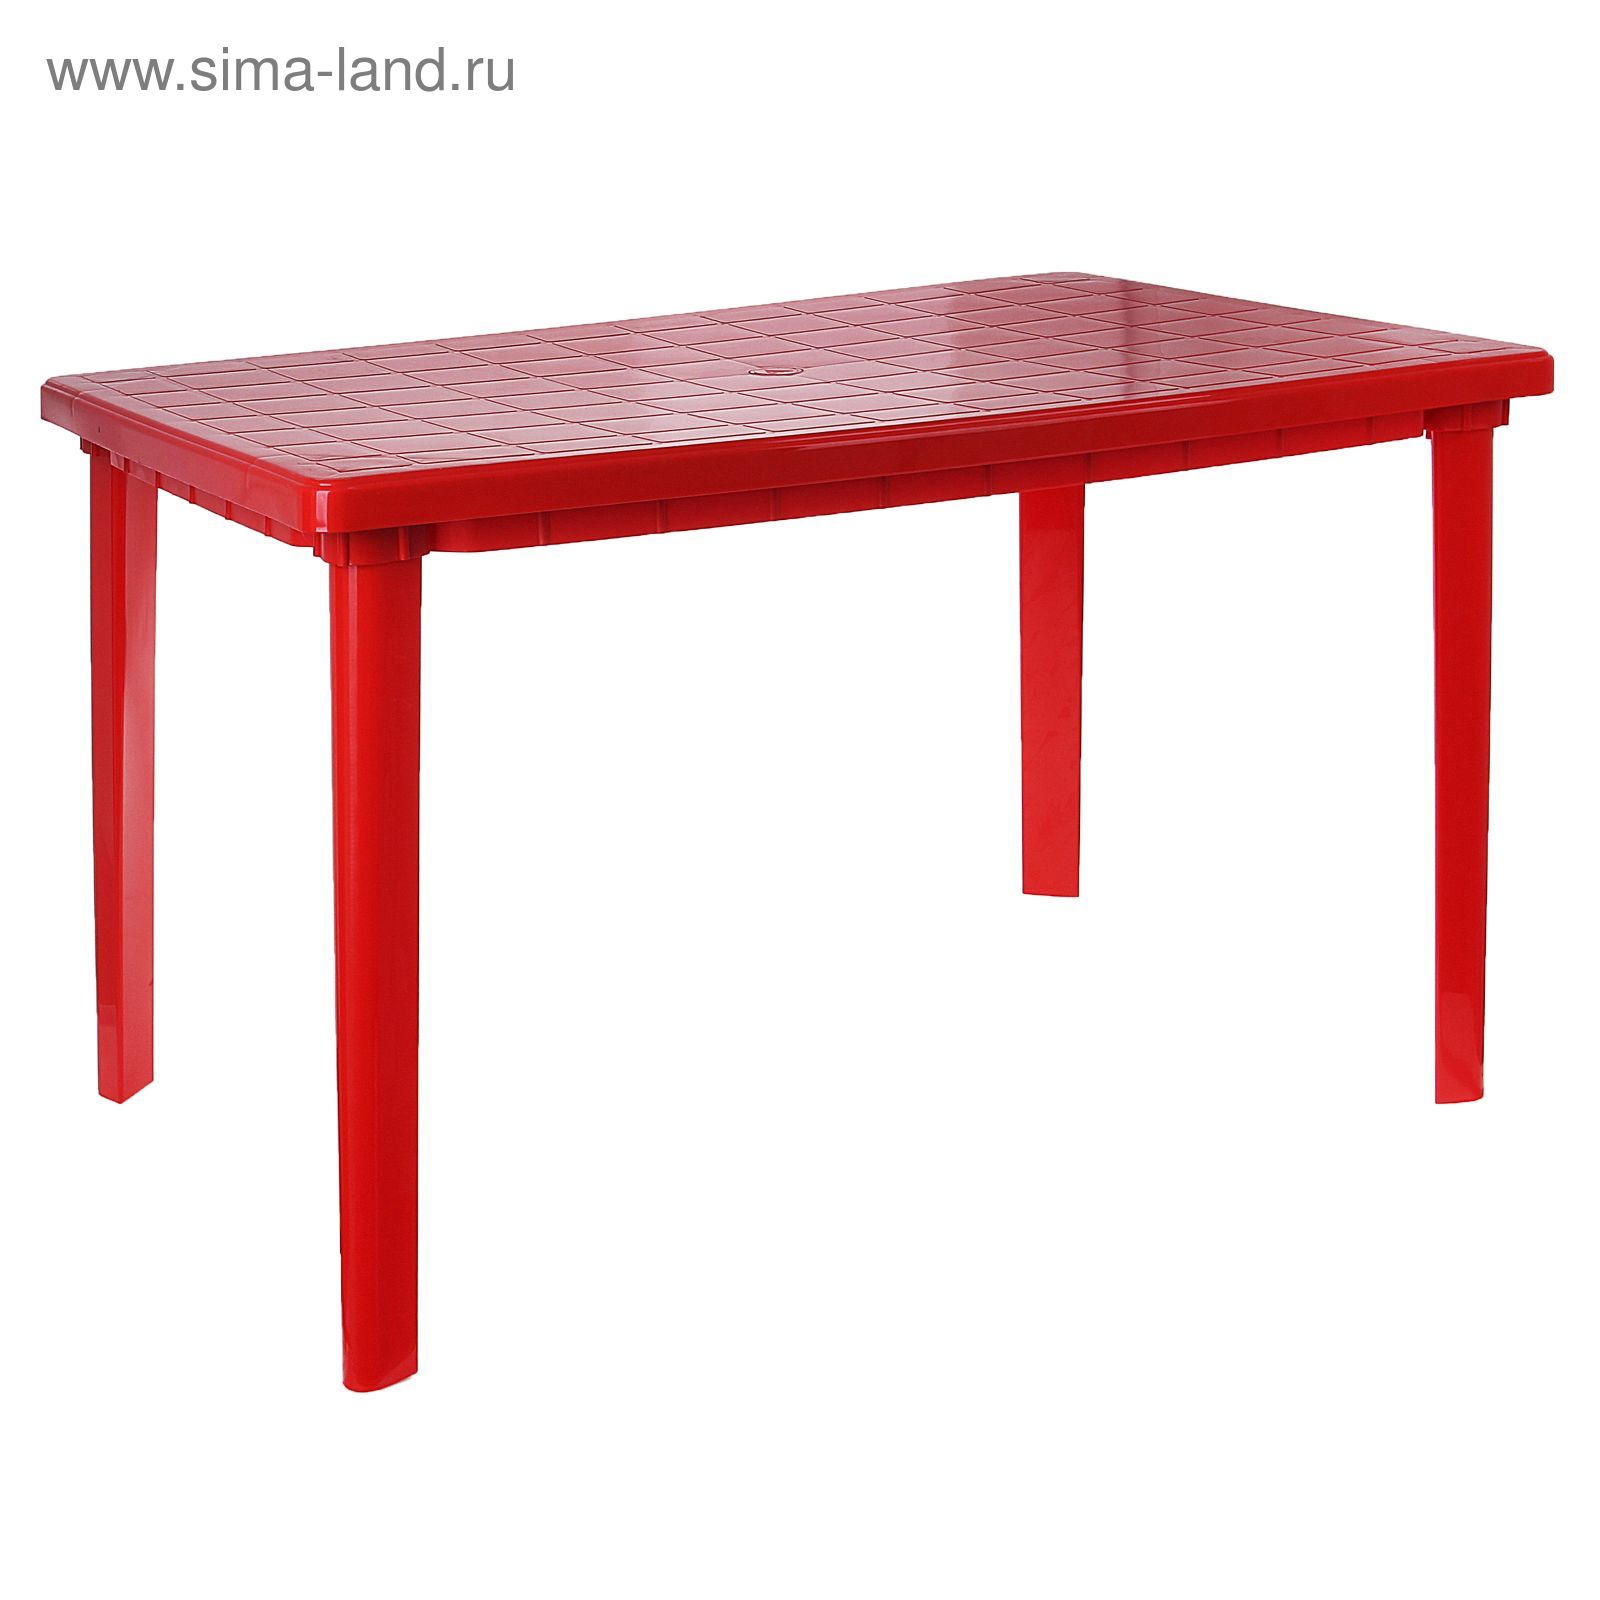 Стол прямоугольный, размер 120 х 85 х 75 см, цвет красный